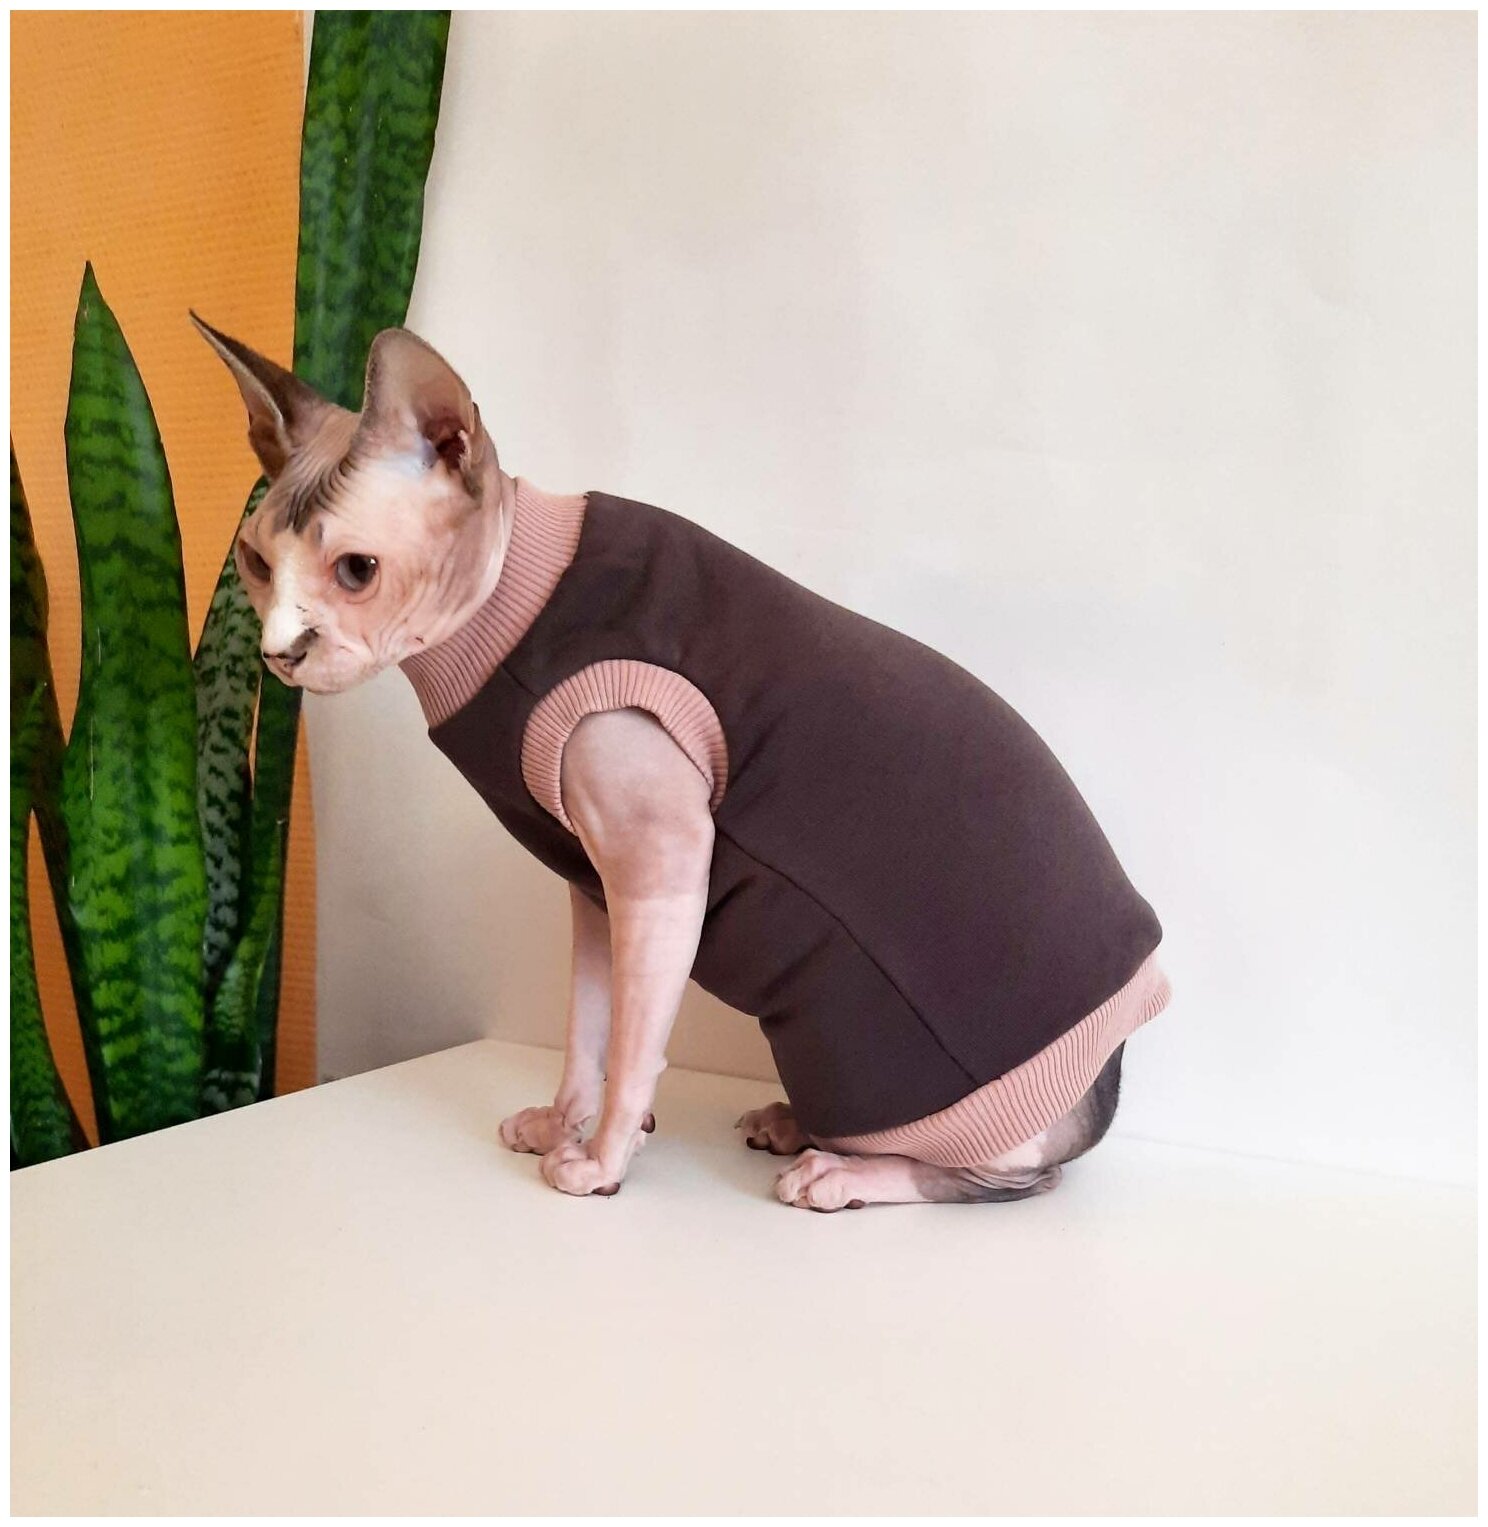 Свитшот для кошек, размер 30 (длина спины 30см), цвет шоколад+беж / толстовка свитшот свитер для кошек сфинкс / одежда для животных - фотография № 4